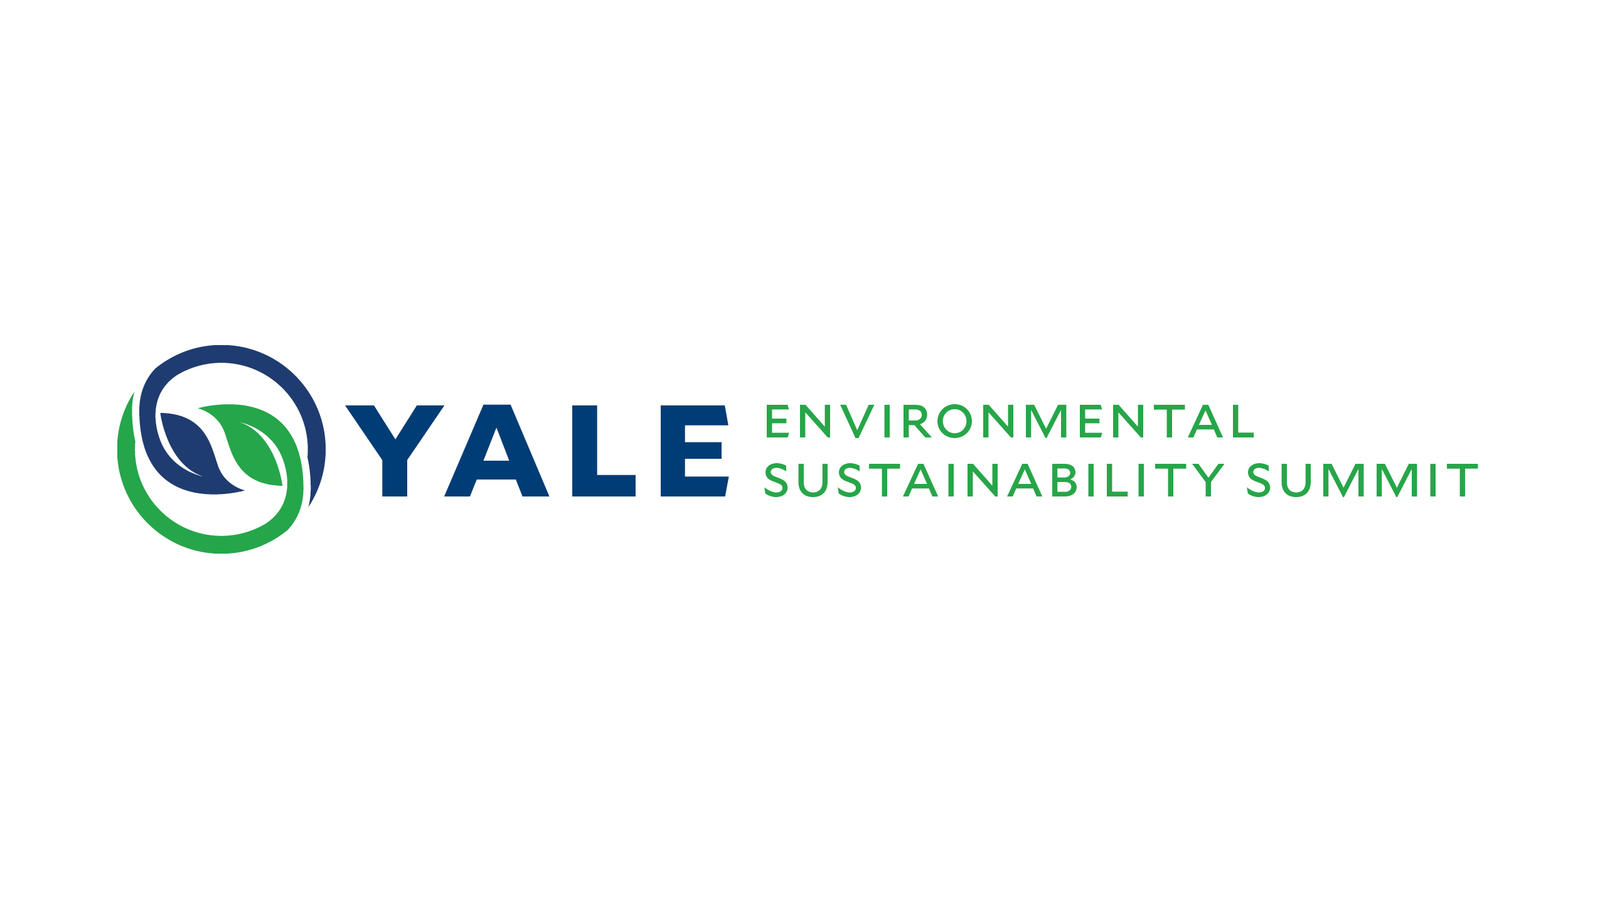 Yale Environmental Sustainability Summit 2019